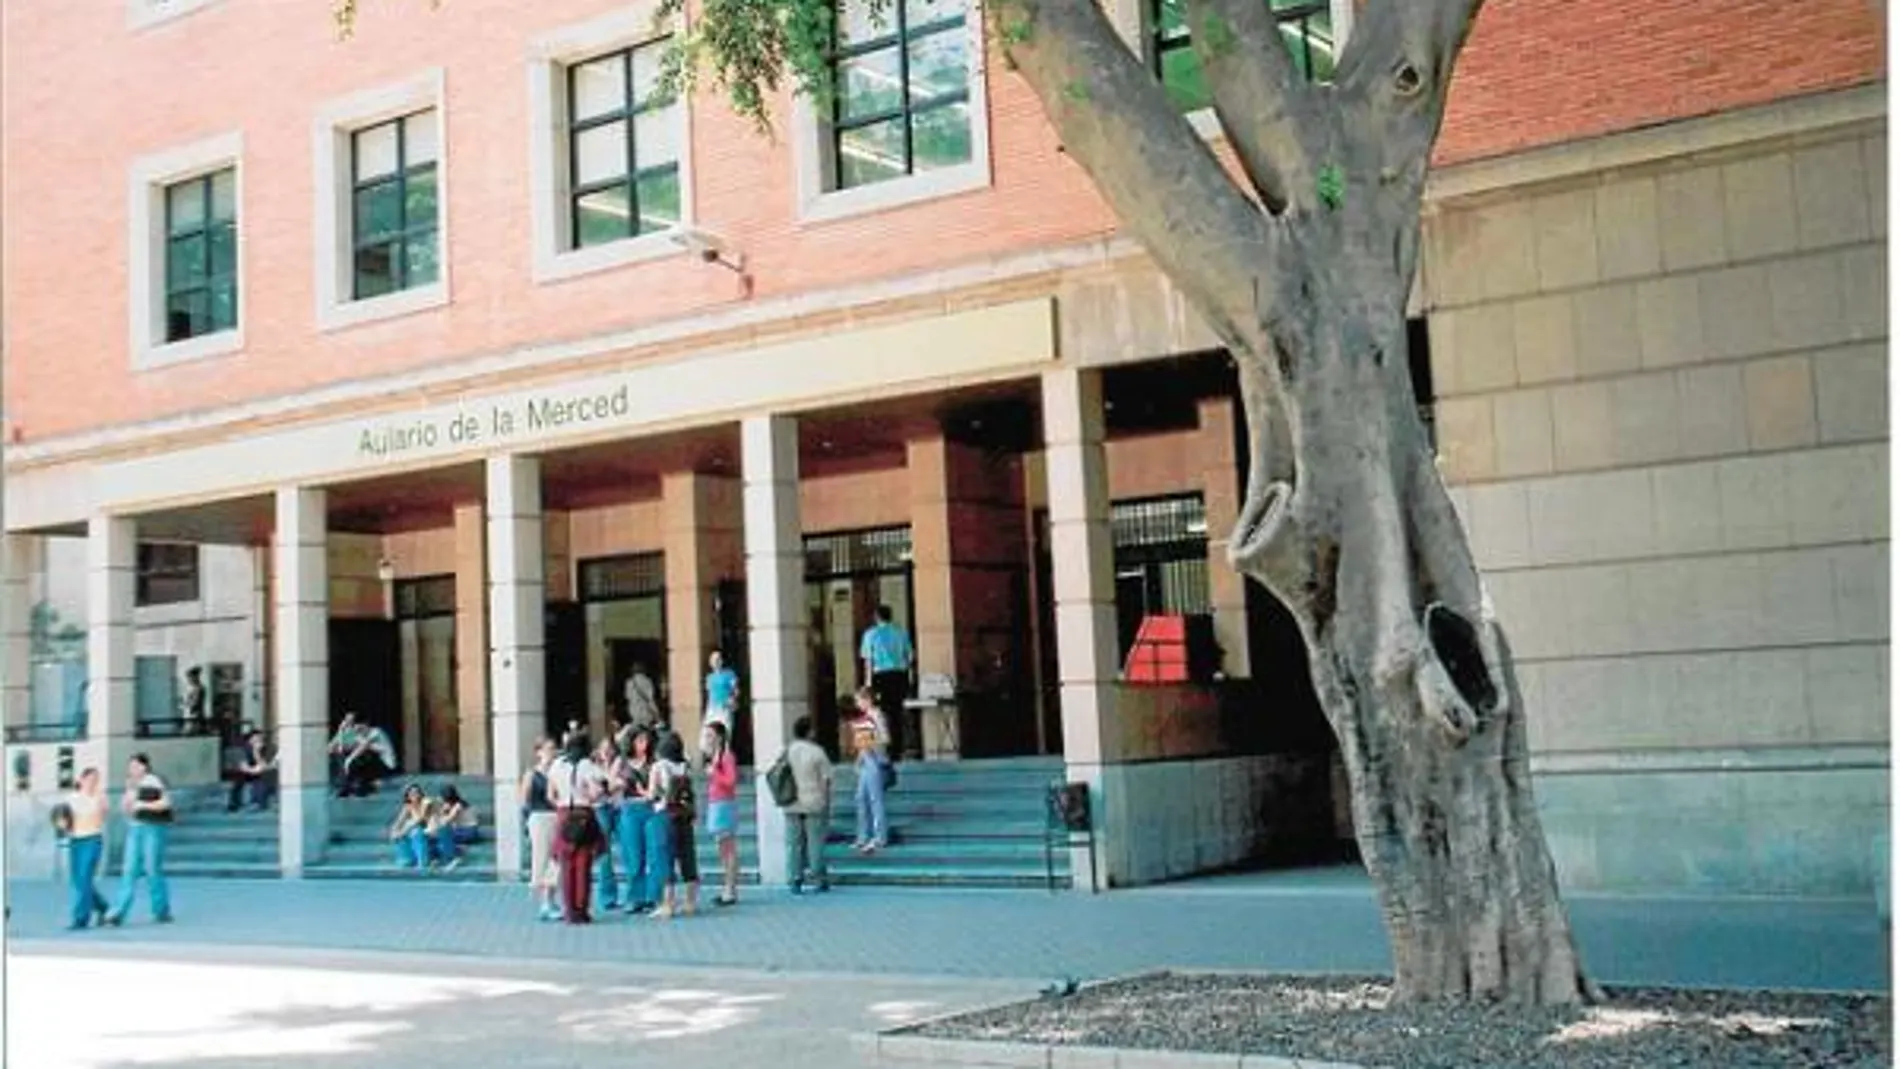 El aulario de la Merced de la Universidad de Murcia en una foto de archivo